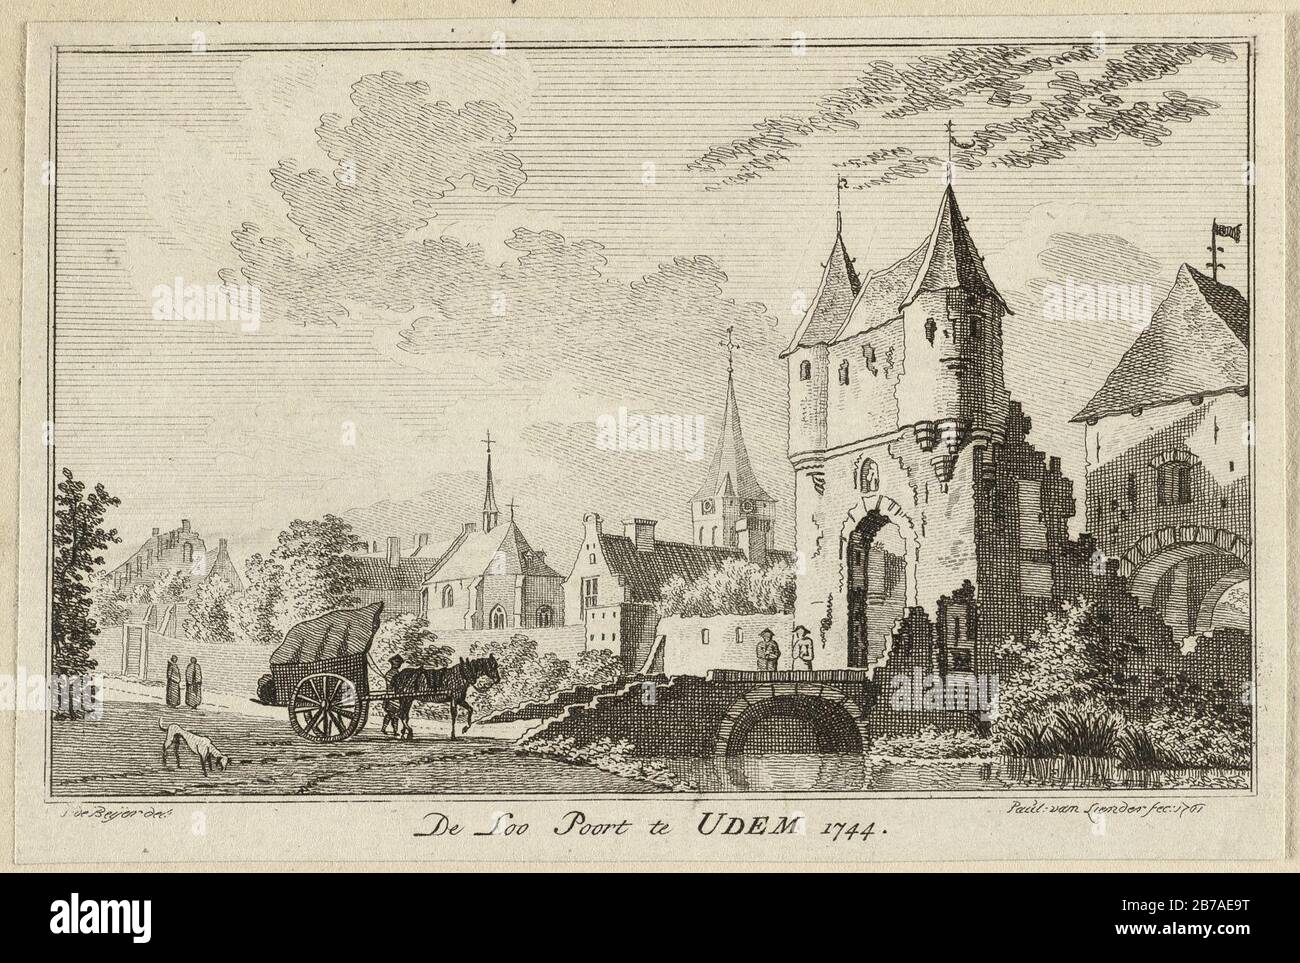 Gezicht op de Loopoort te Uedem Udem, 1744. Stock Photo